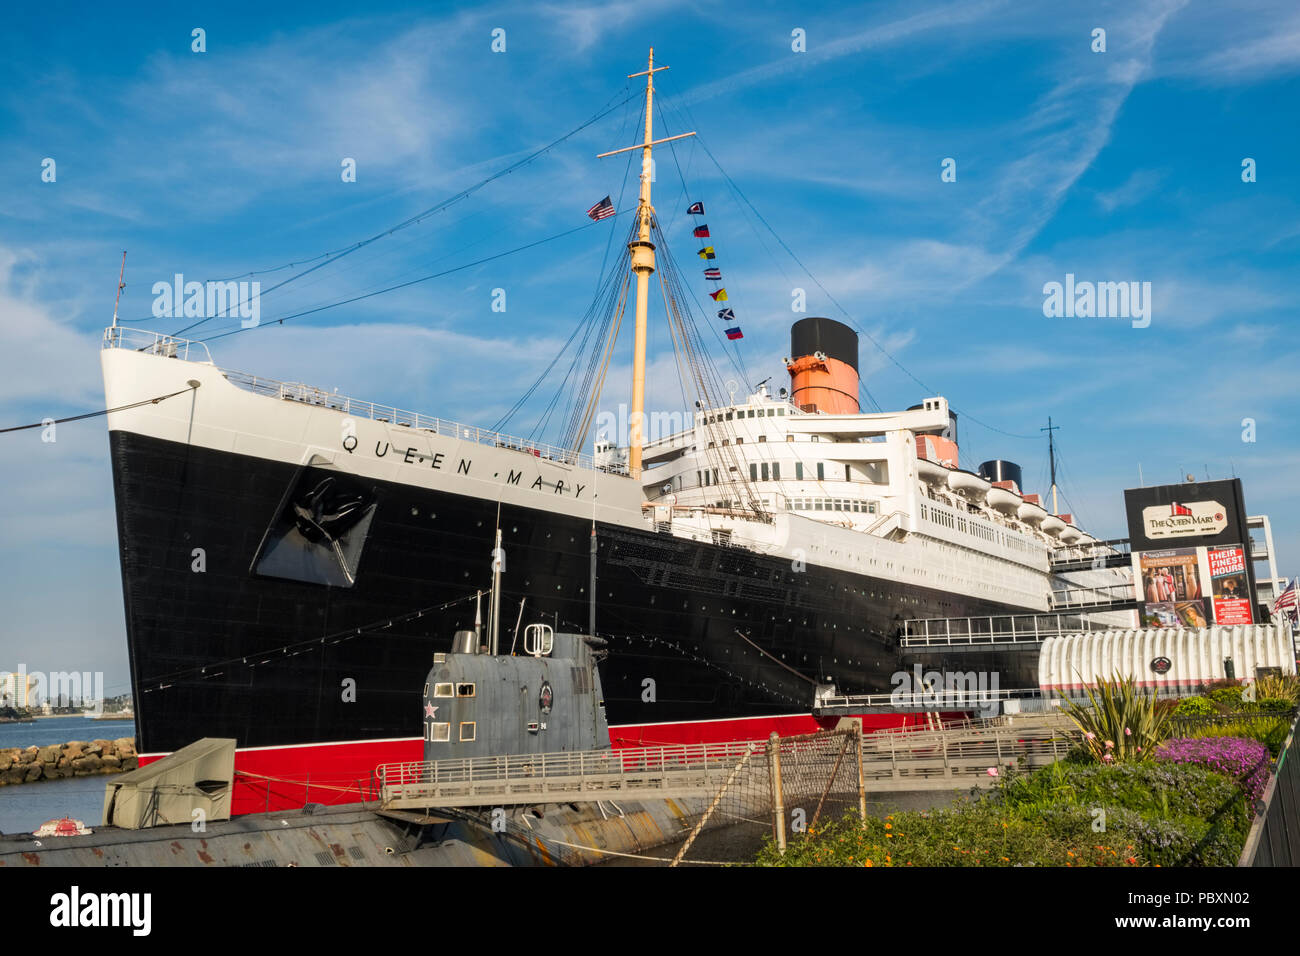 La Queen Mary nave, oggi sede di un museo e di grande attrazione turistica con il sottomarino russo Scorpion ormeggiata accanto ad esso, a Long Beach, California, CA, US Foto Stock